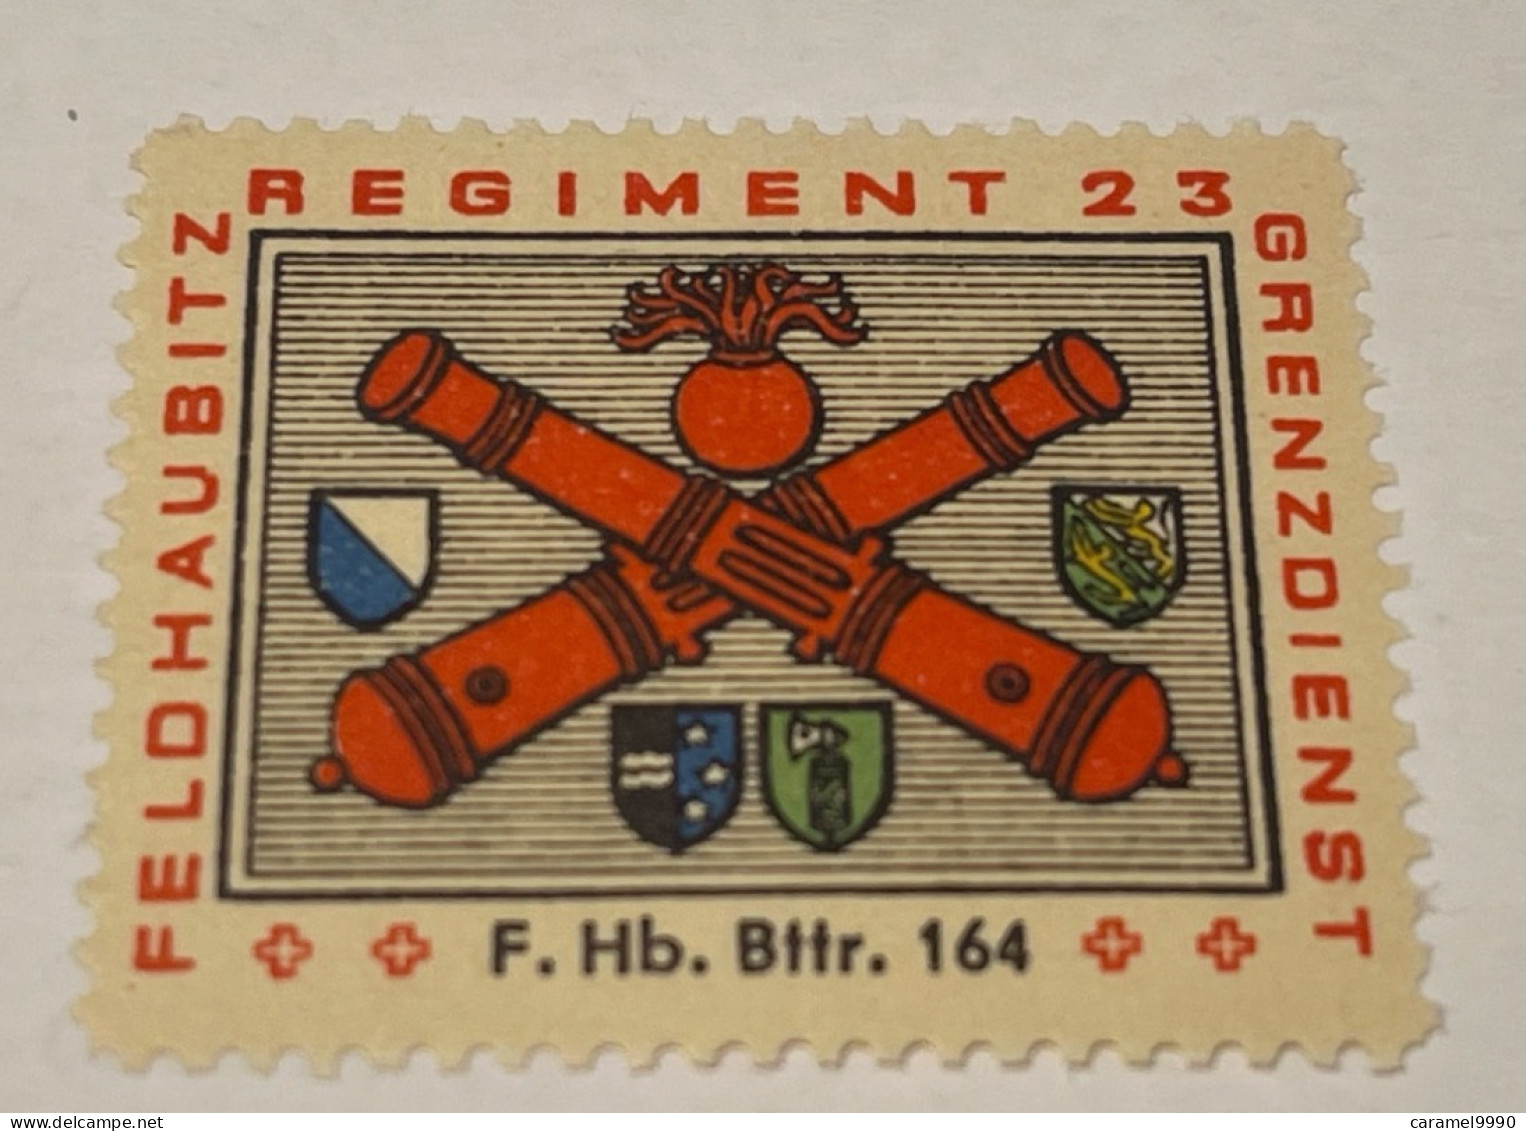 Schweiz Swiss Soldatenmarken Feldhaubitz Rare Regiment 23 F. HB. Bttr. 164 Z 26 - Vignetten